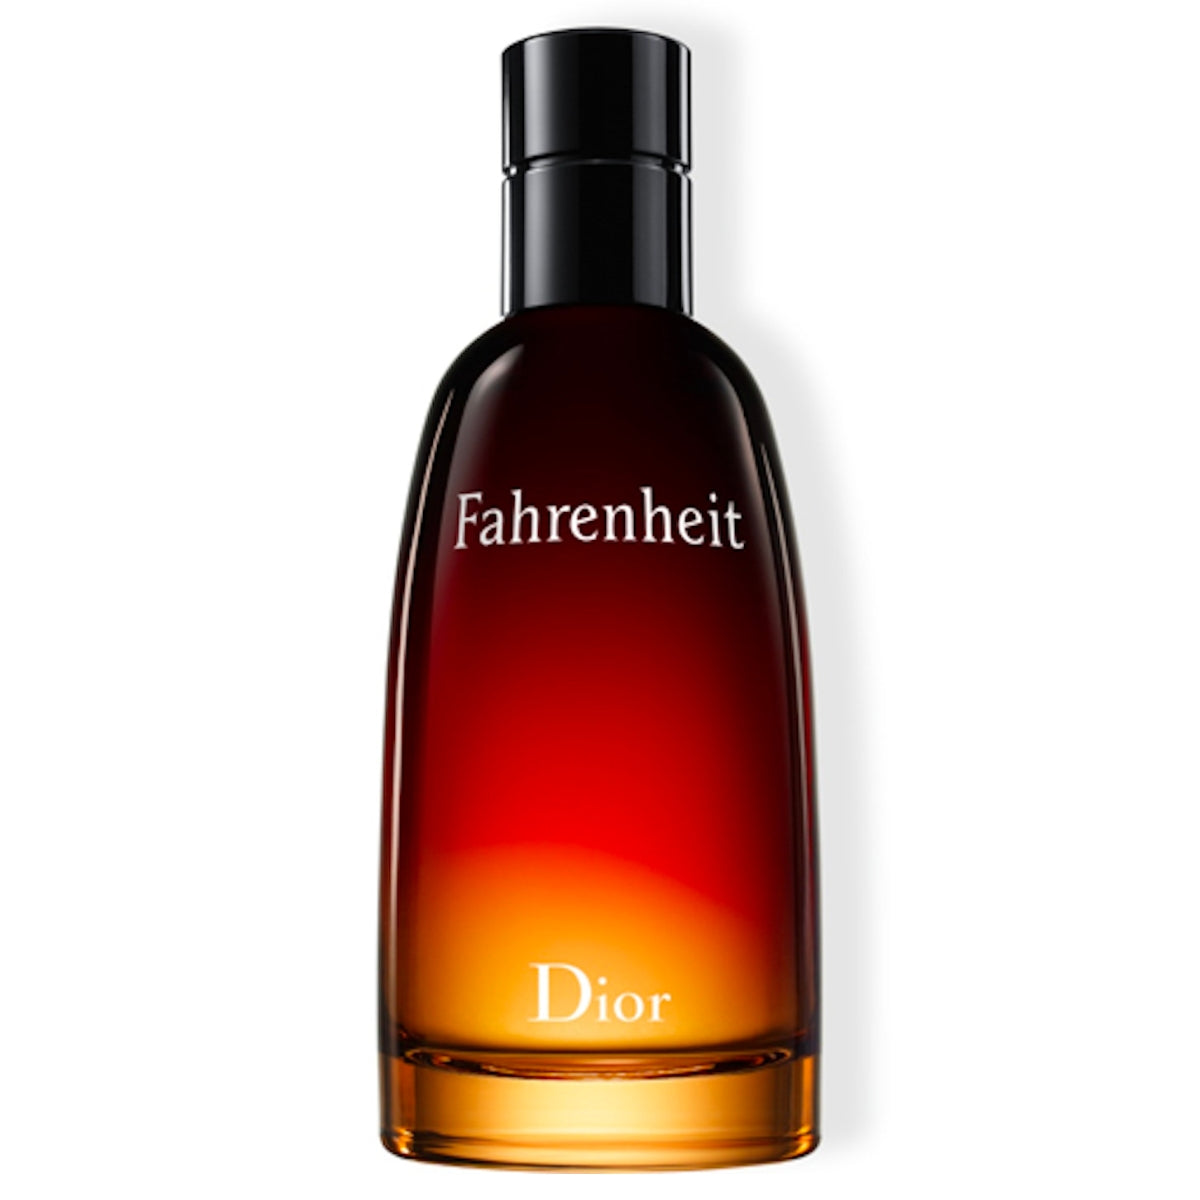 Christian Dior Fahrenheit Eau de Toilette for Men